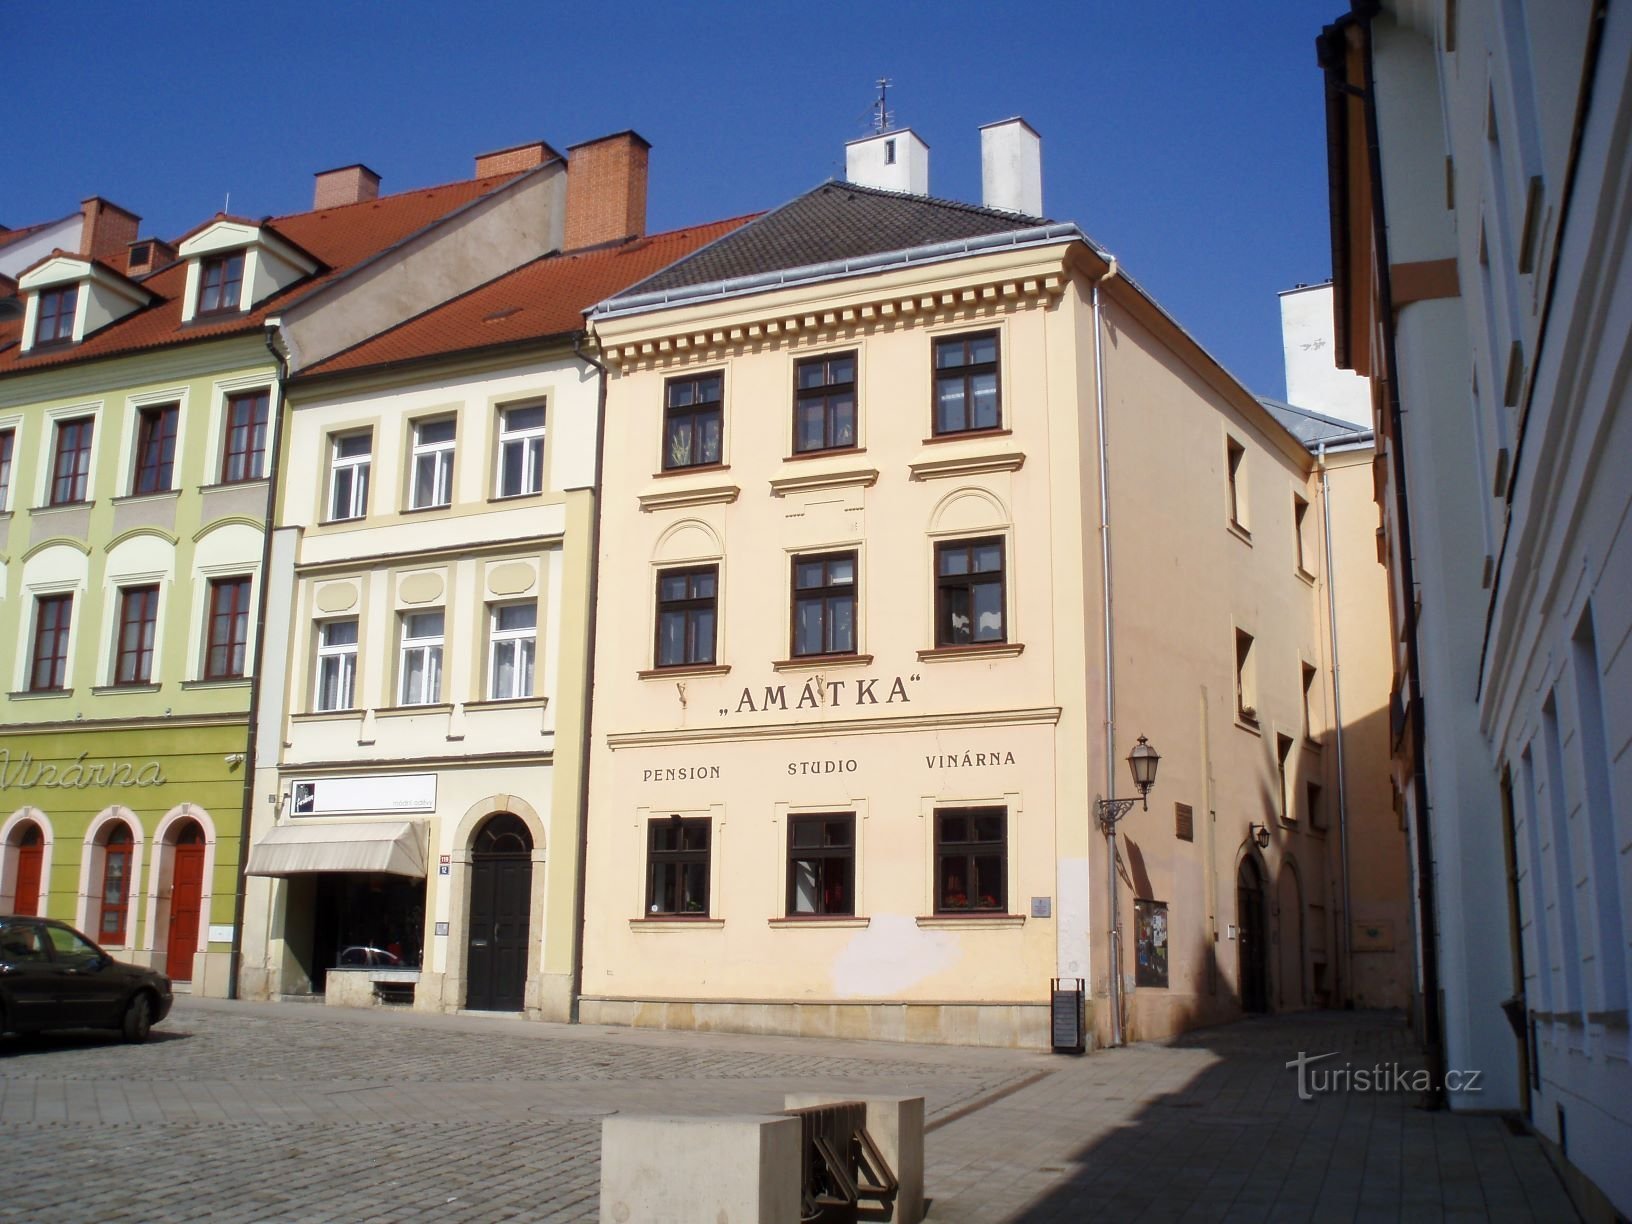 Malé náměstí No. 119-120 (Hradec Králové, 23.3.2012.)